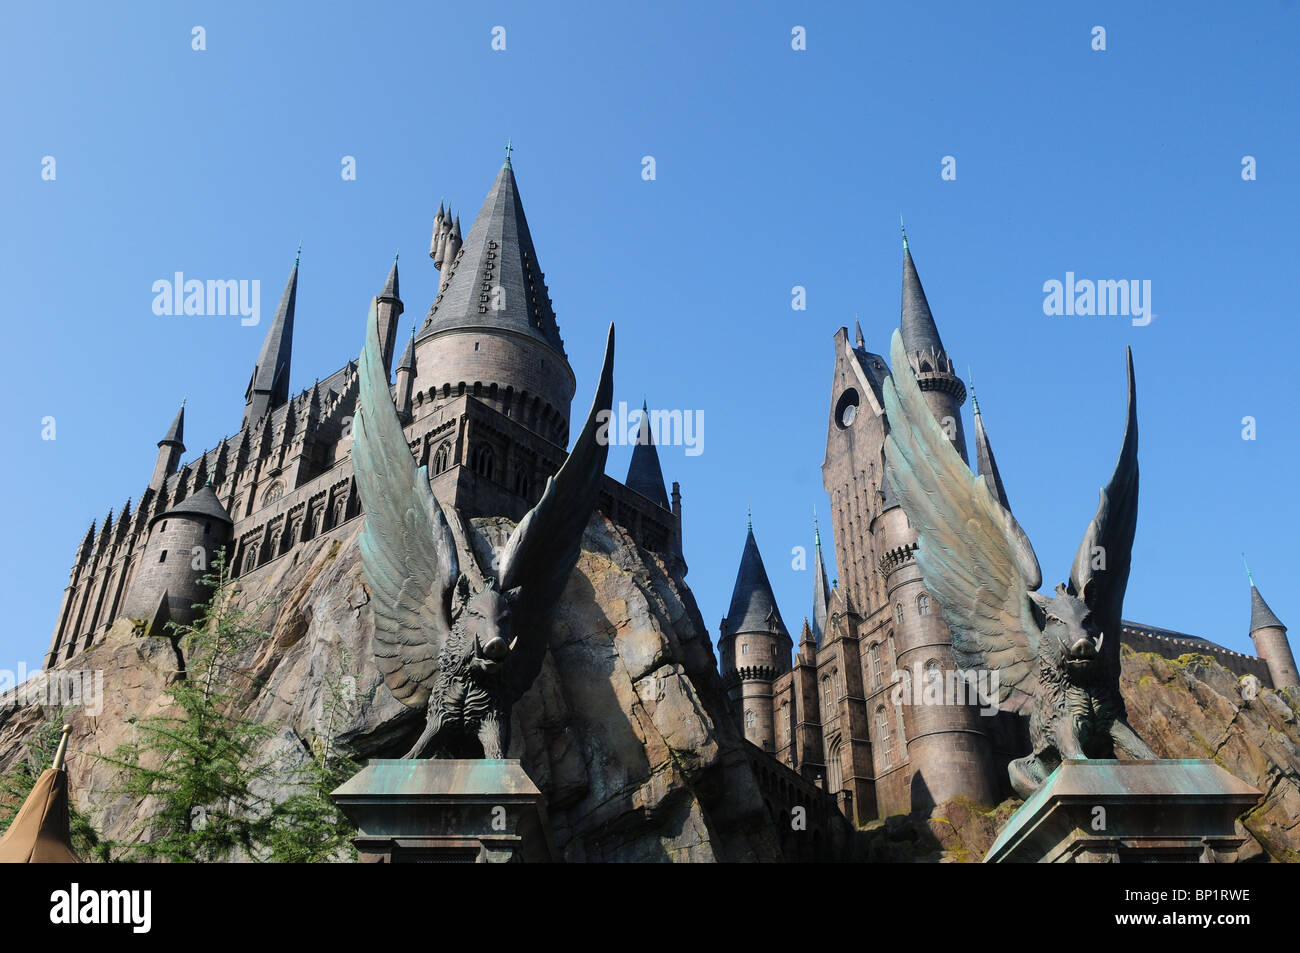 Le Château de Poudlard, dans le monde magique de Harry Potter, de Islands of Adventure, Universal Orlando Resort, Orlando, Floride, USA Banque D'Images